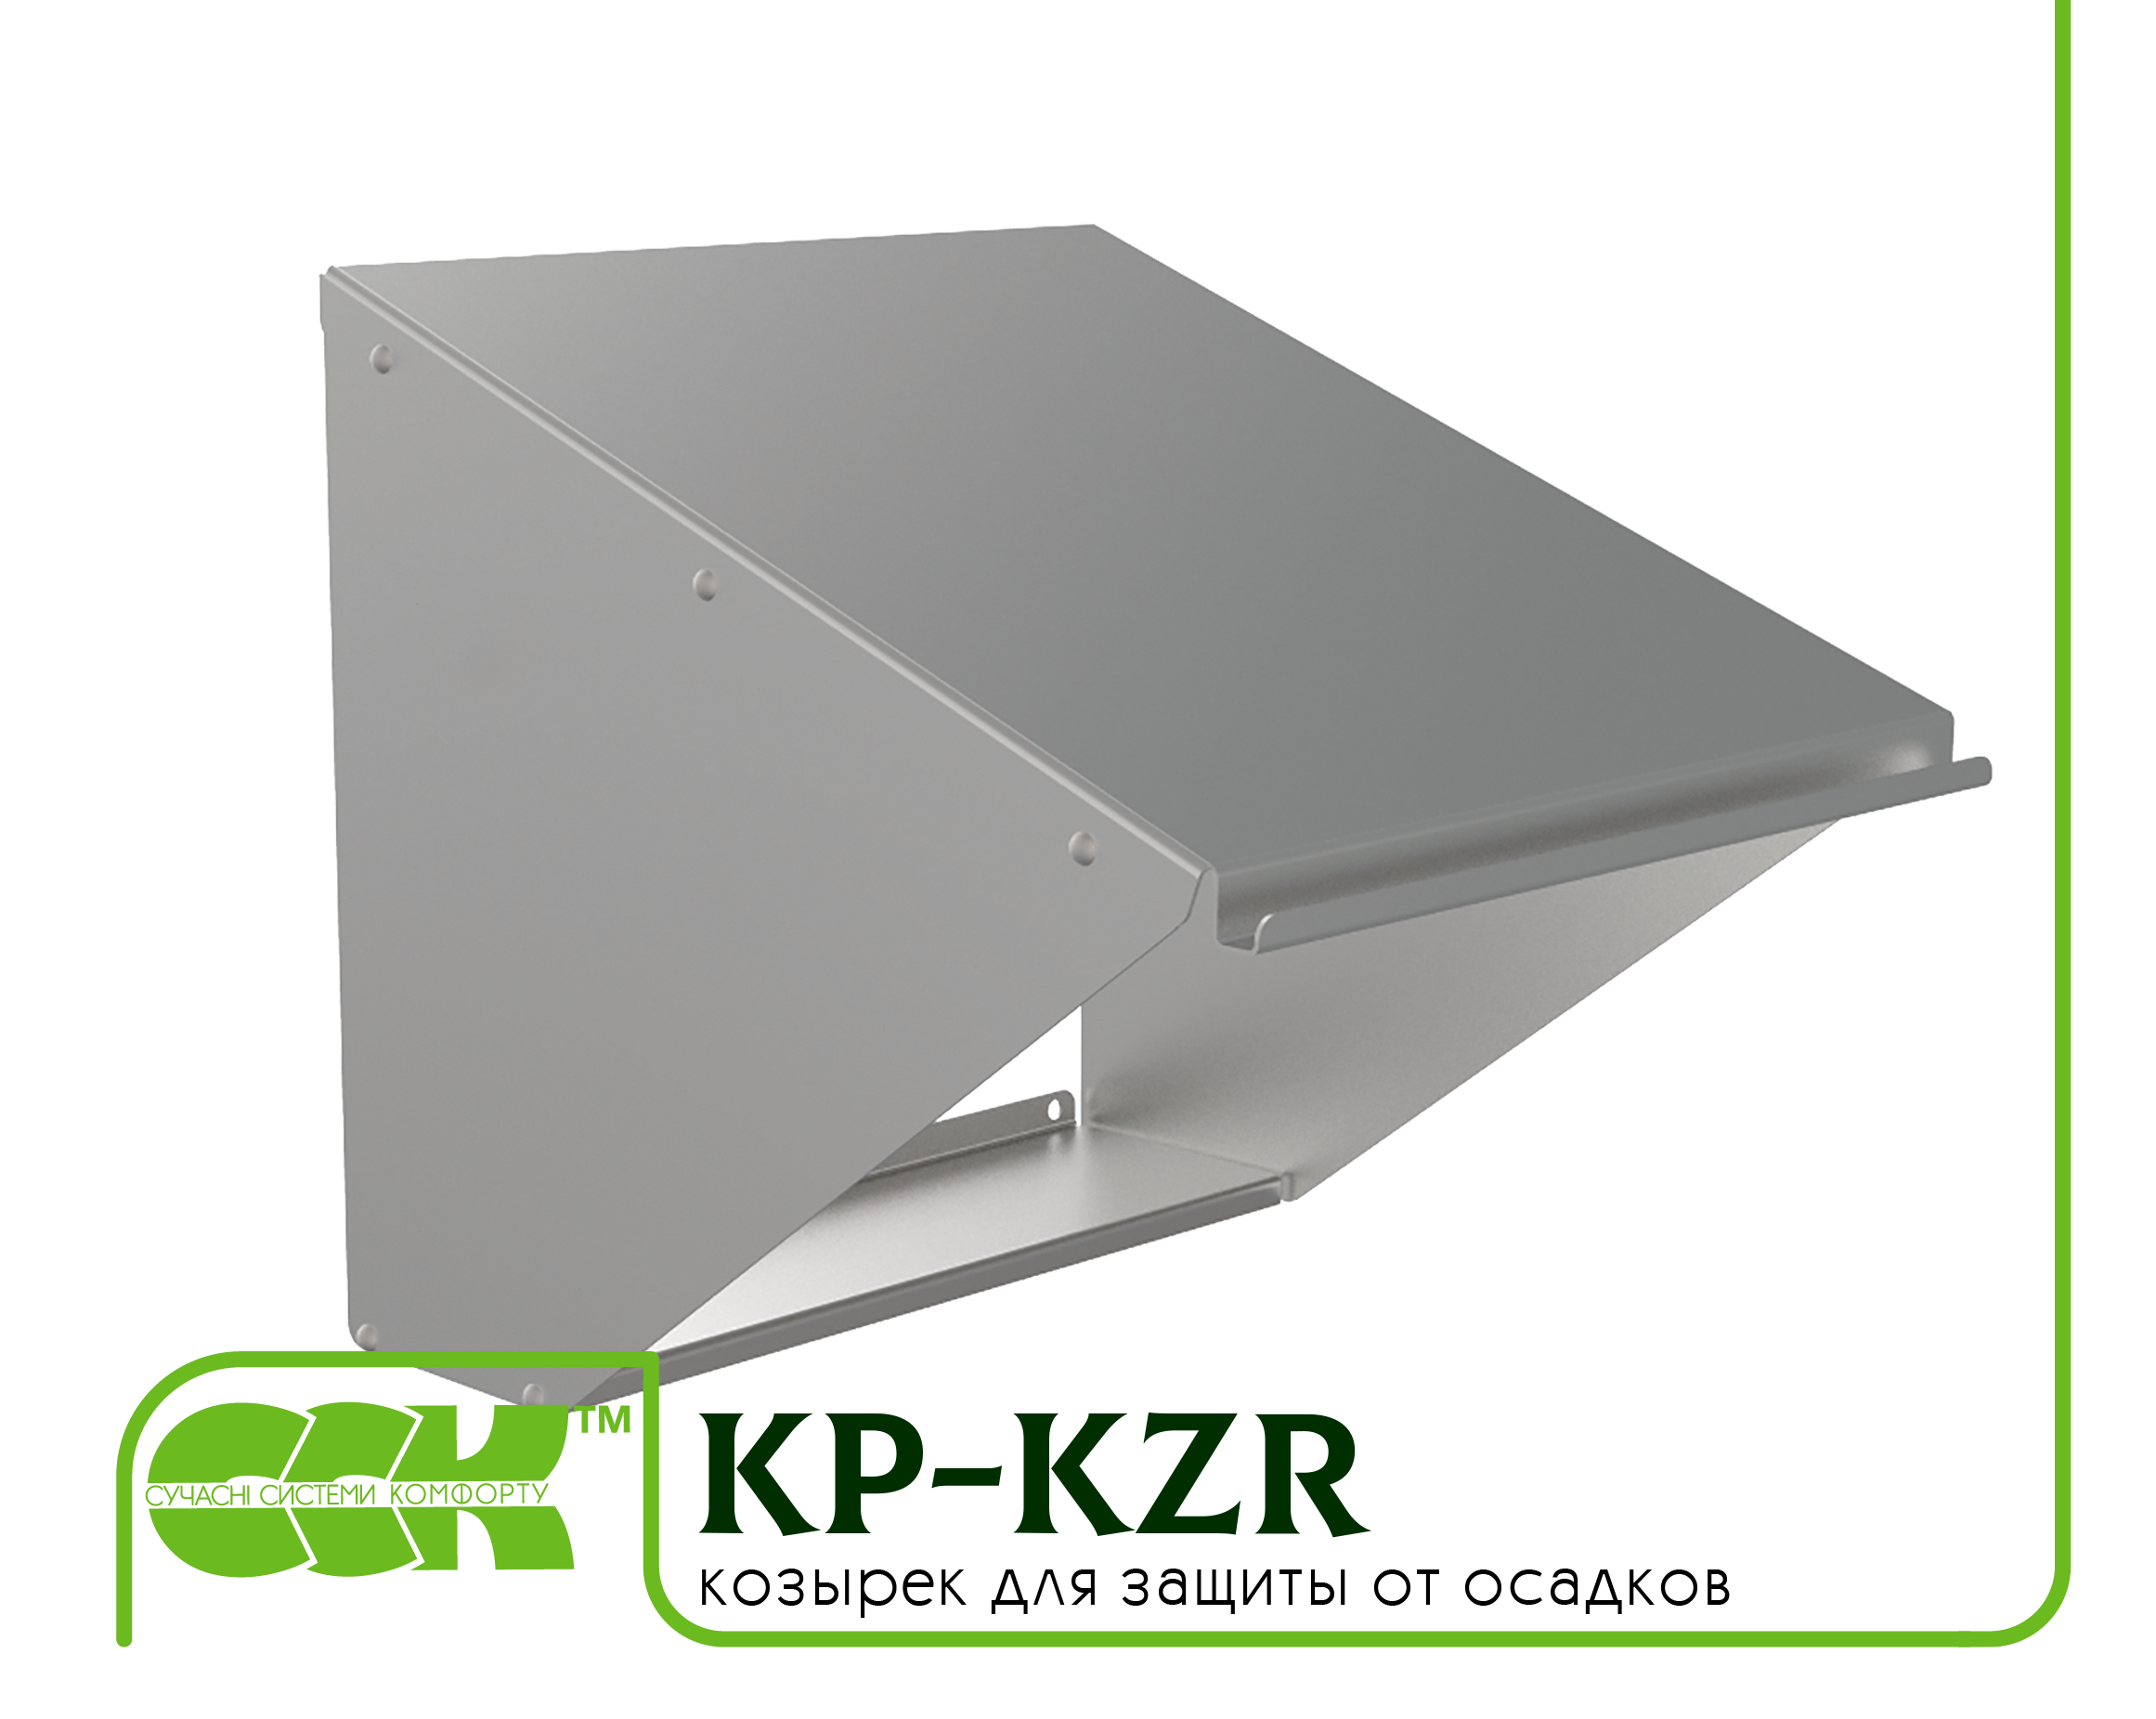 Козырек для защиты вентилятора KP-KZR-100-100